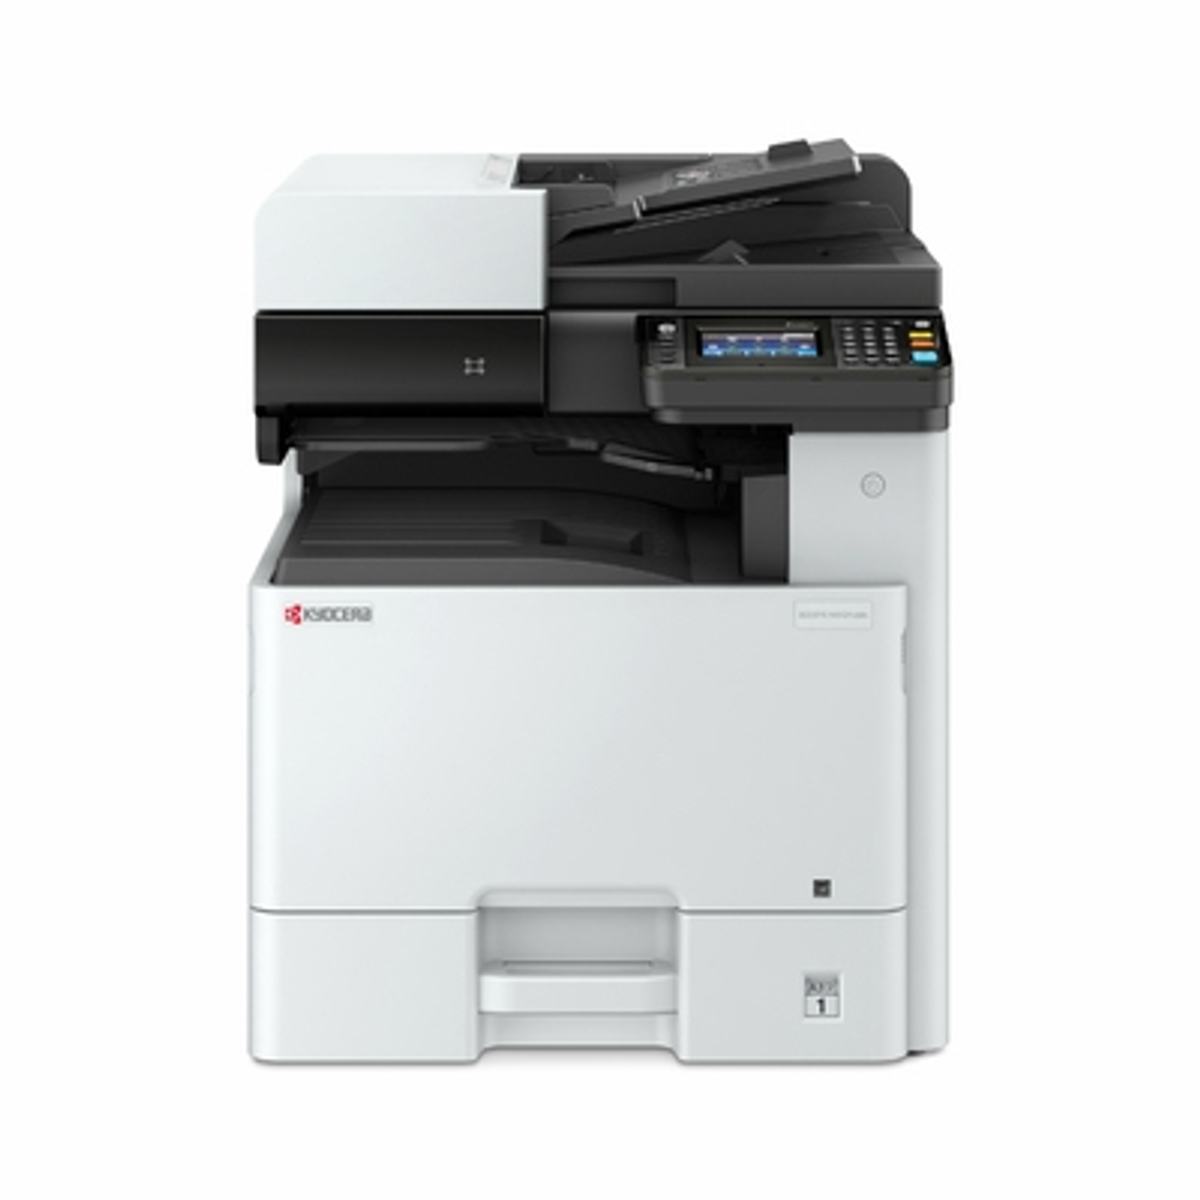 Impresora Kyocera M8124cidn ecosys laser a3 9600 x 600 dpi 24 ppm multifuncional fotocopiadora y doble cara 24ppm a4 12 1200 1200dpi 2